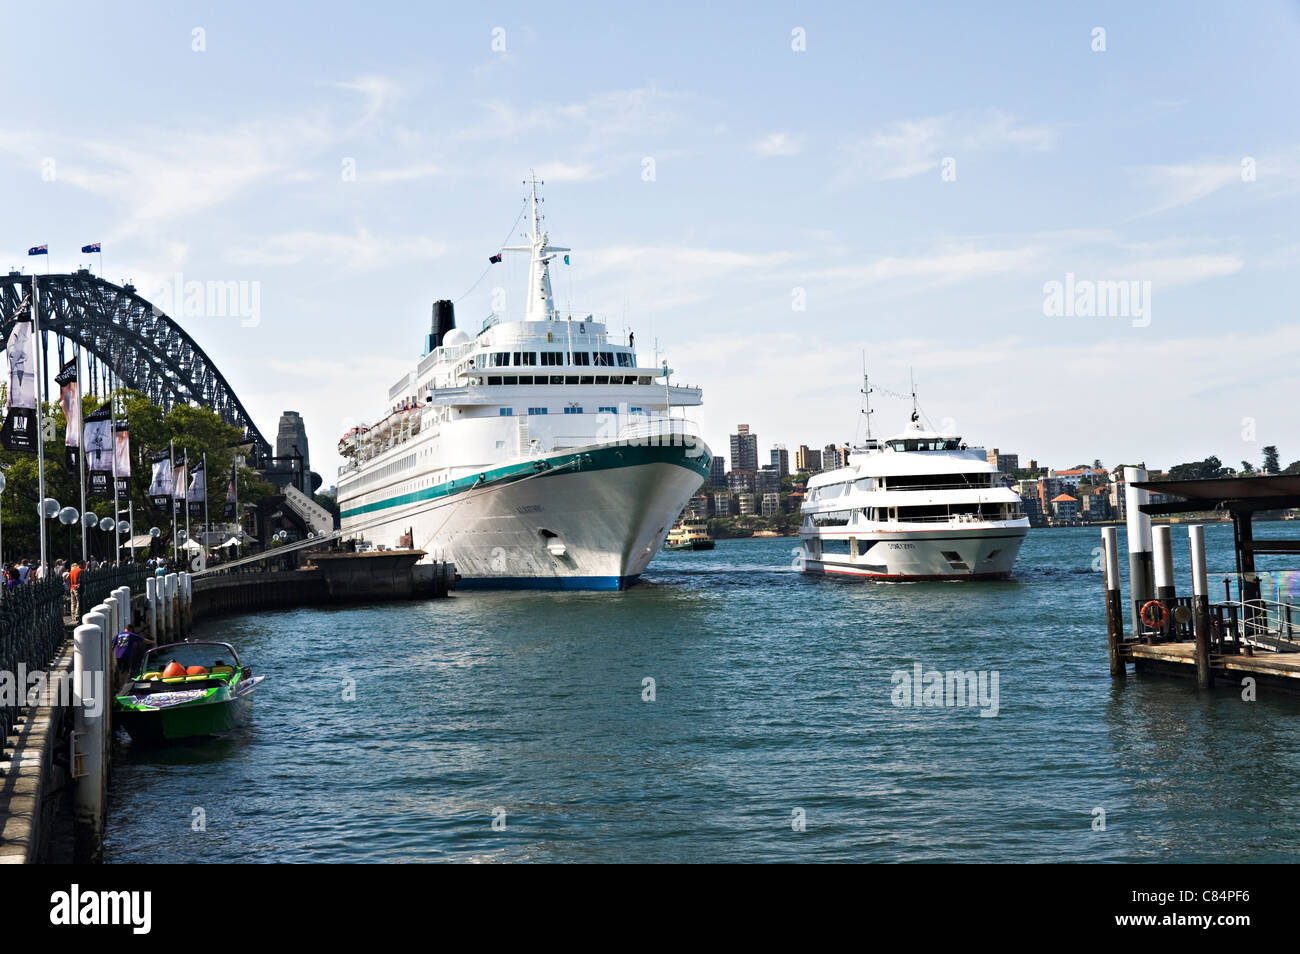 Le Phoenix Reisen exploité Cruise Ship Albatros accosté au terminal passagers d'outre-mer dans le port de Sydney , Australie Banque D'Images